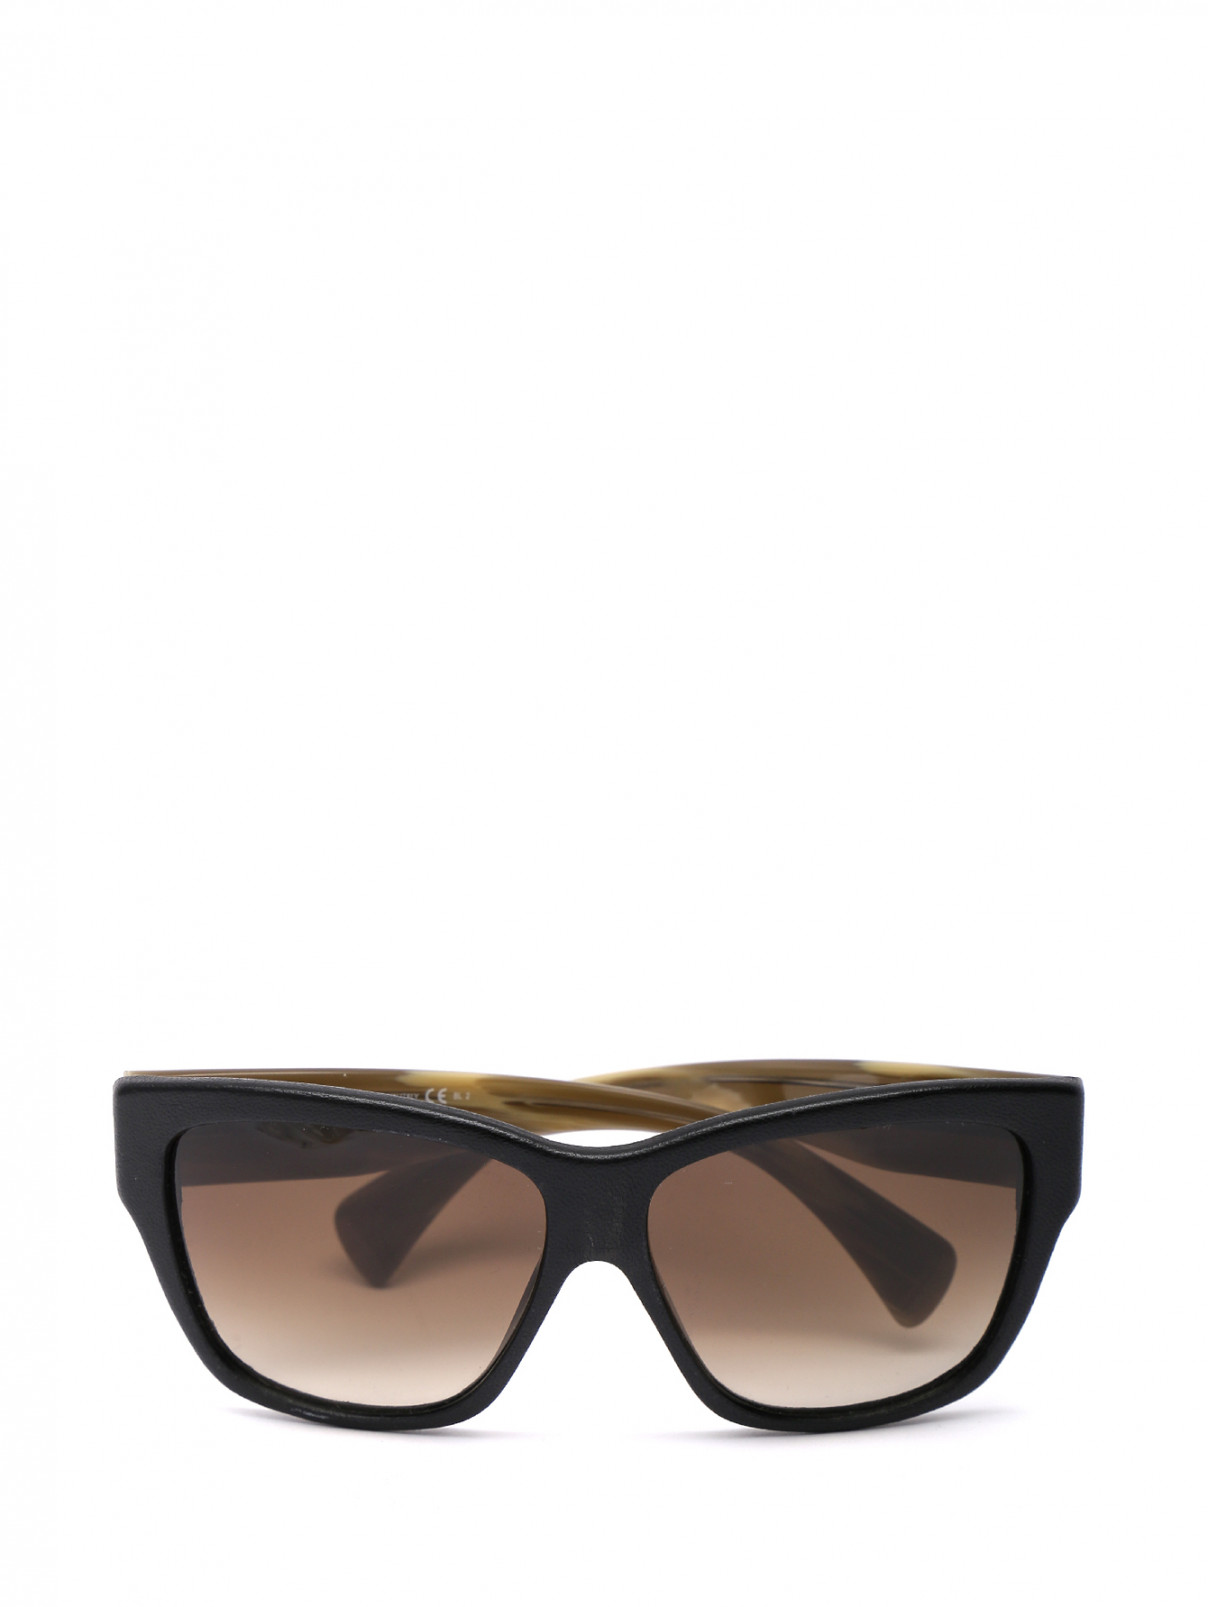 Очки солнцезащитные в пластиковой оправе MC Alexander McQueen  –  Общий вид  – Цвет:  Черный